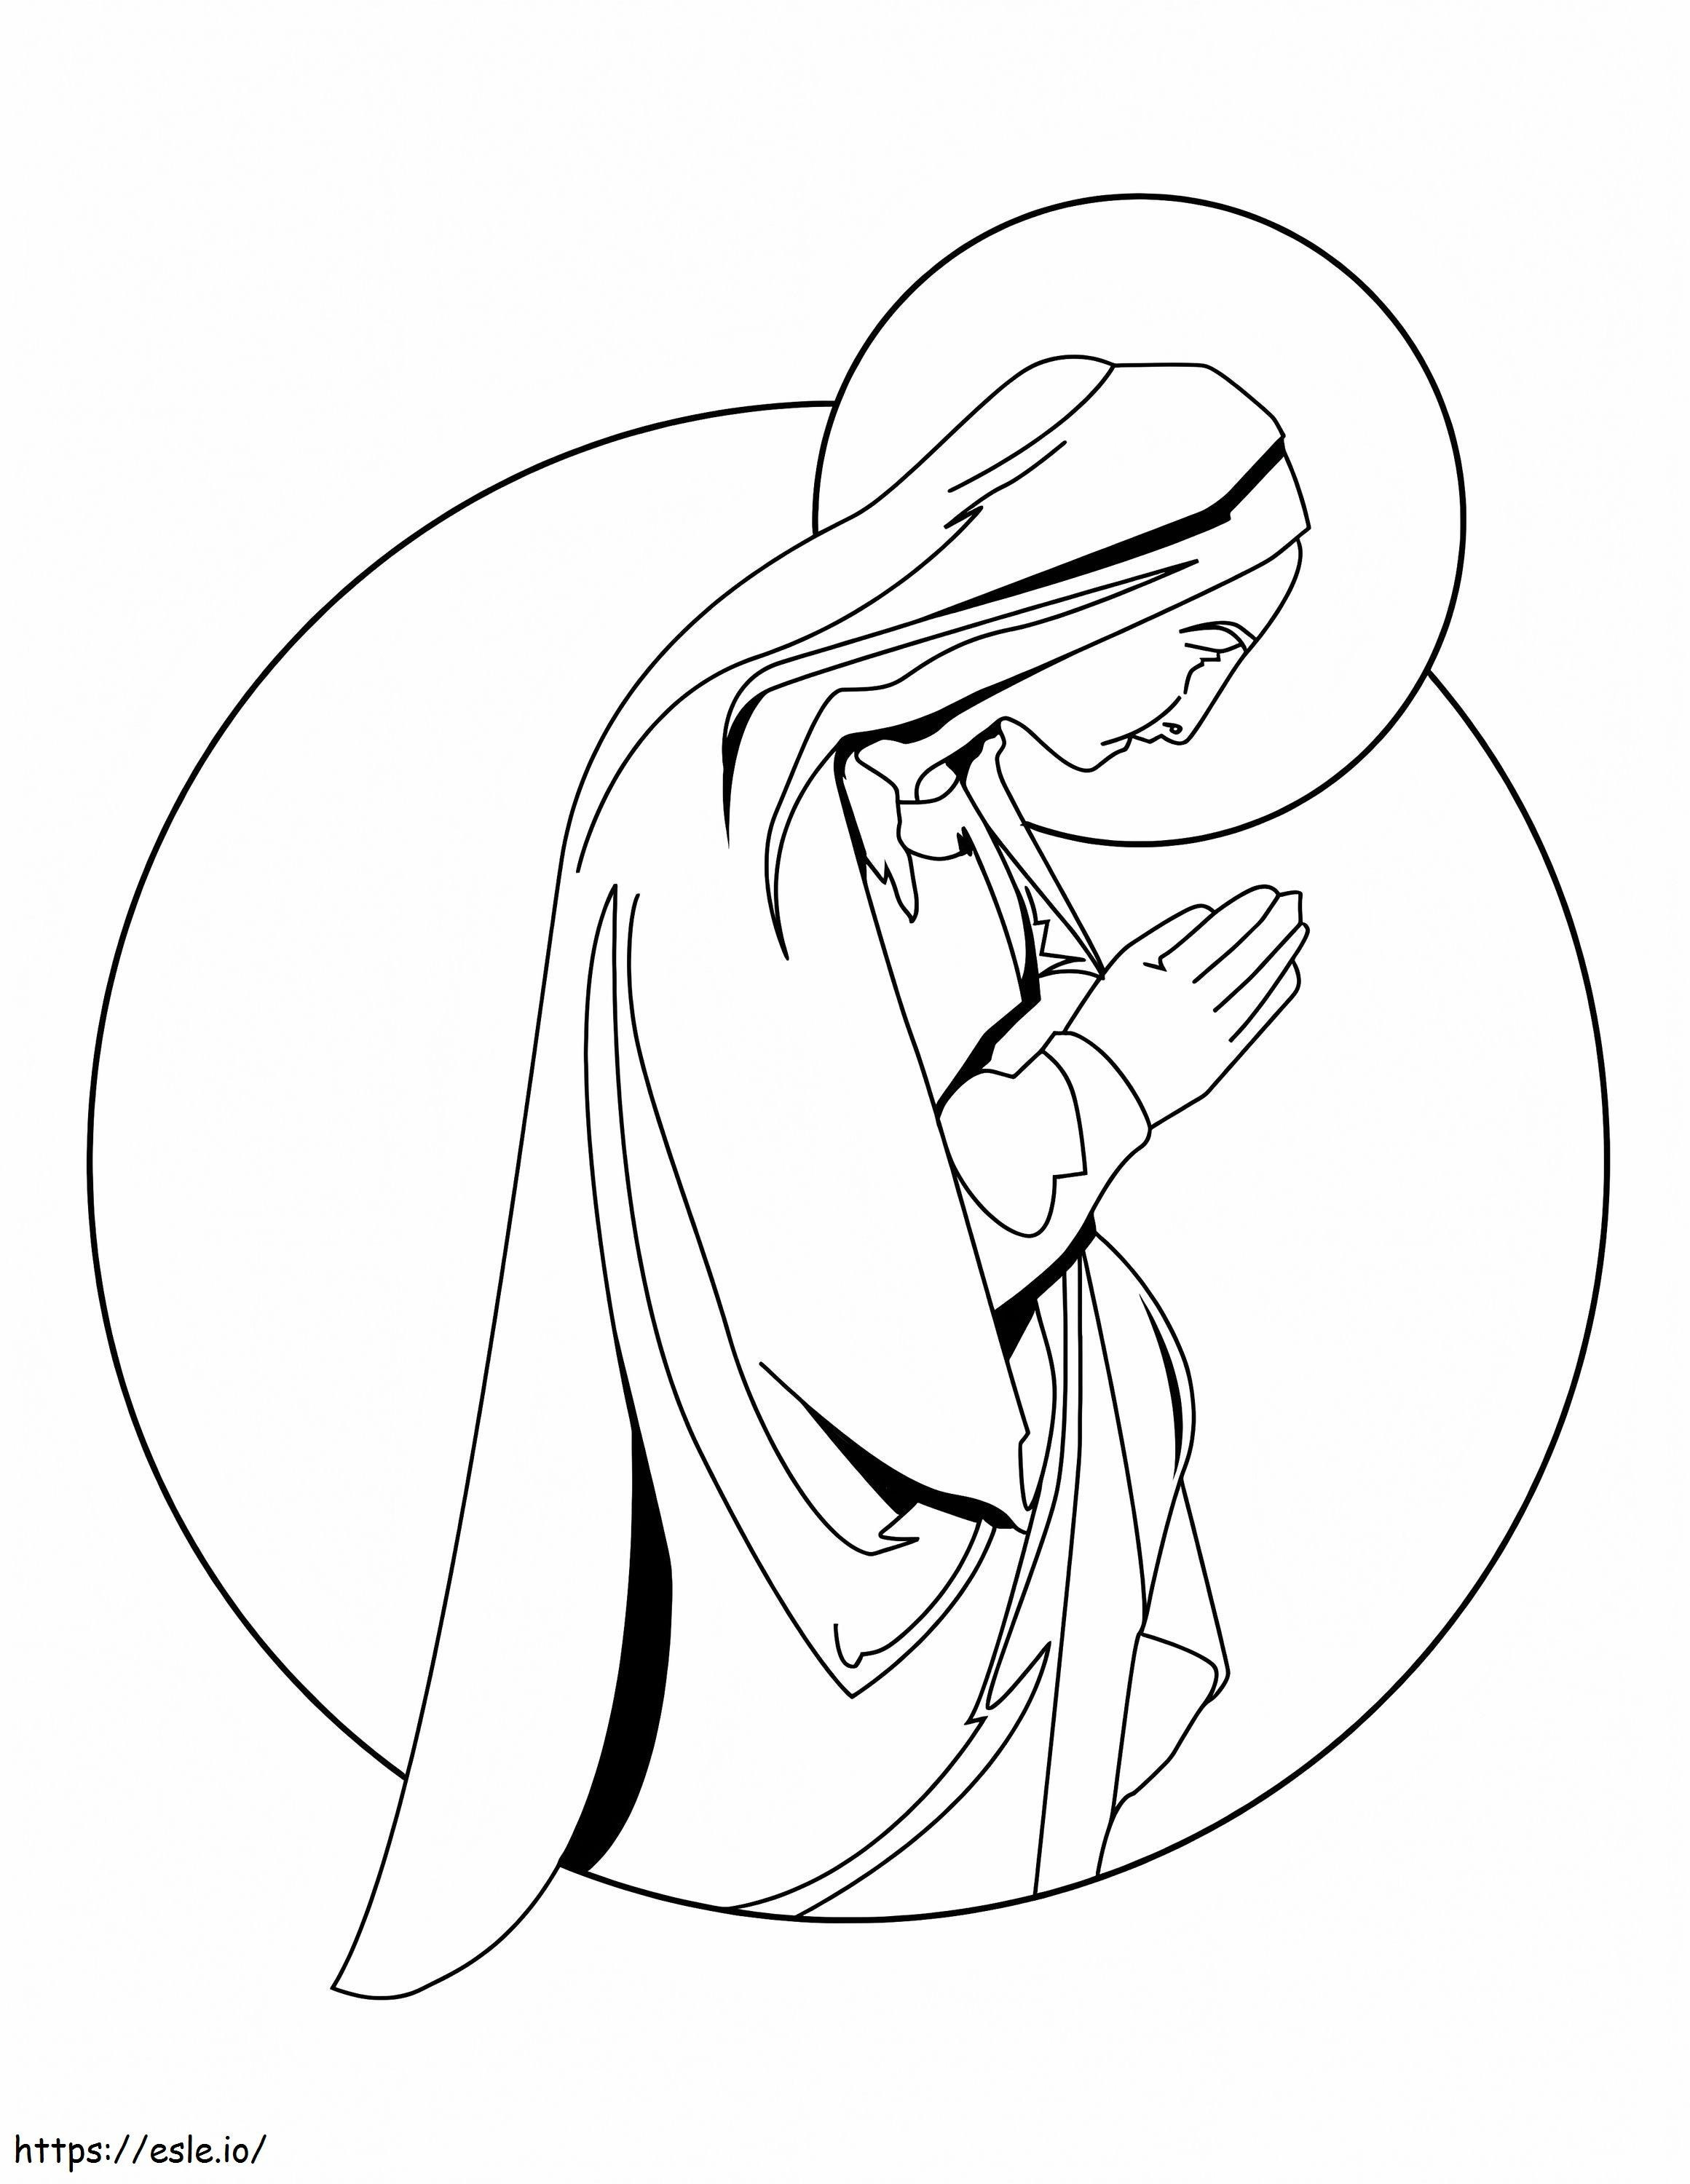 Drucken Sie Maria, die Mutter Jesu ausmalbilder